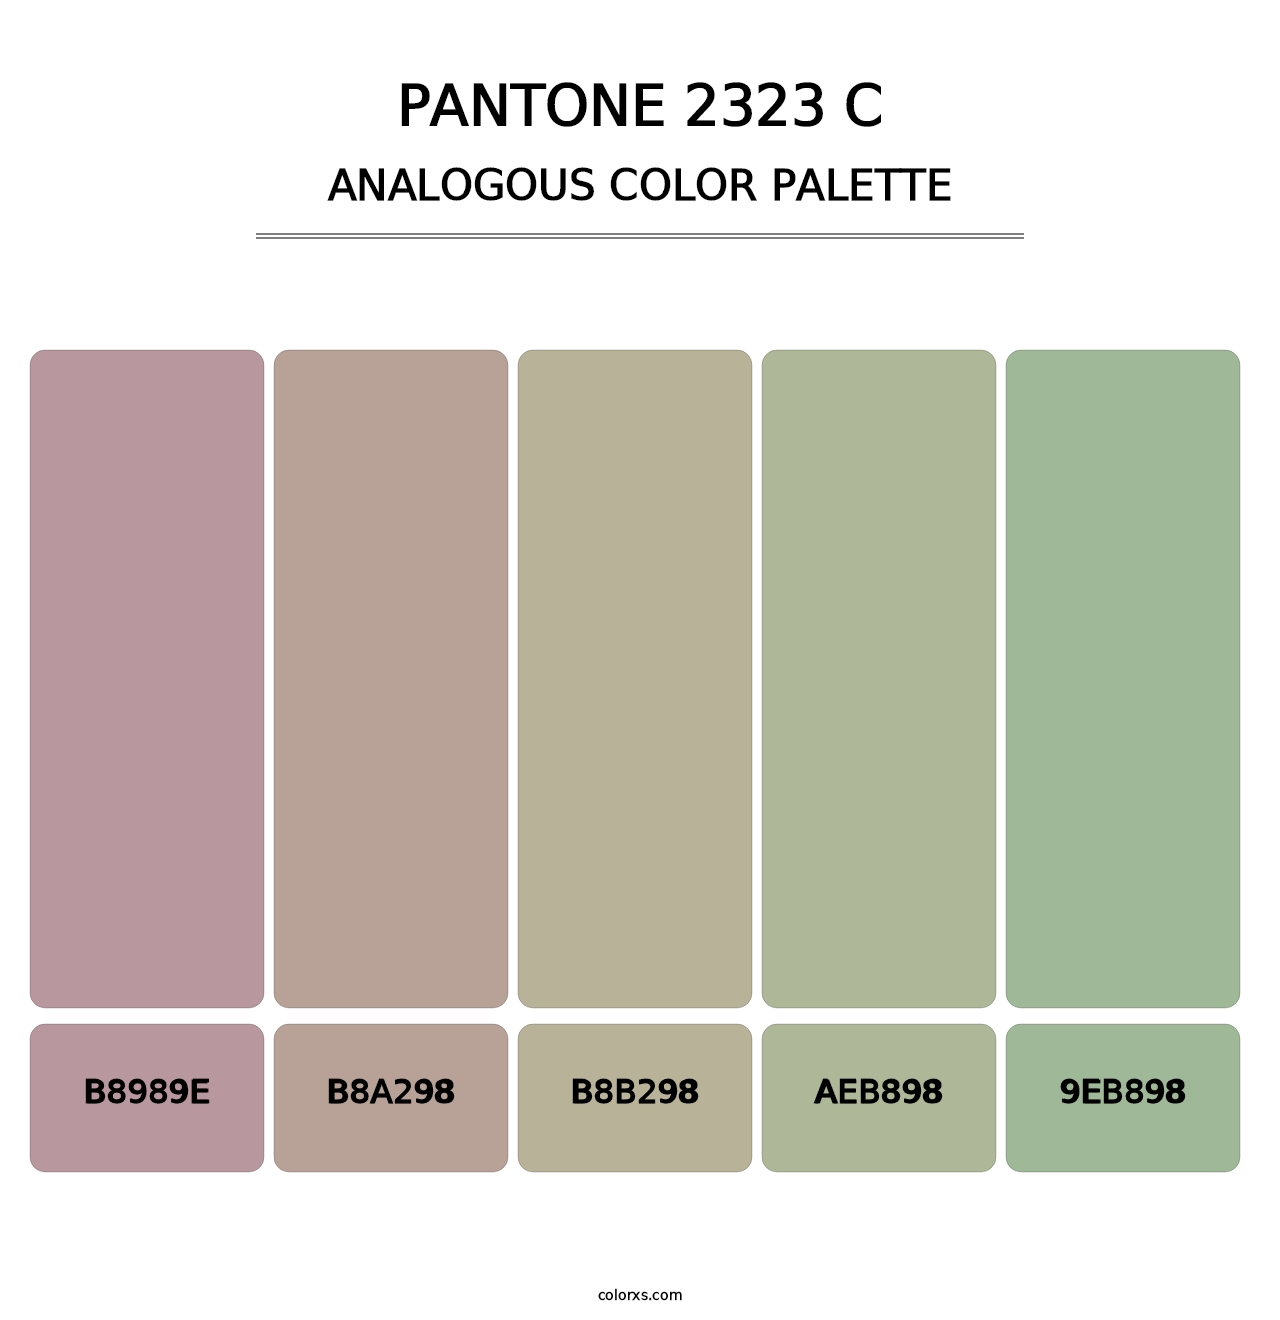 PANTONE 2323 C - Analogous Color Palette